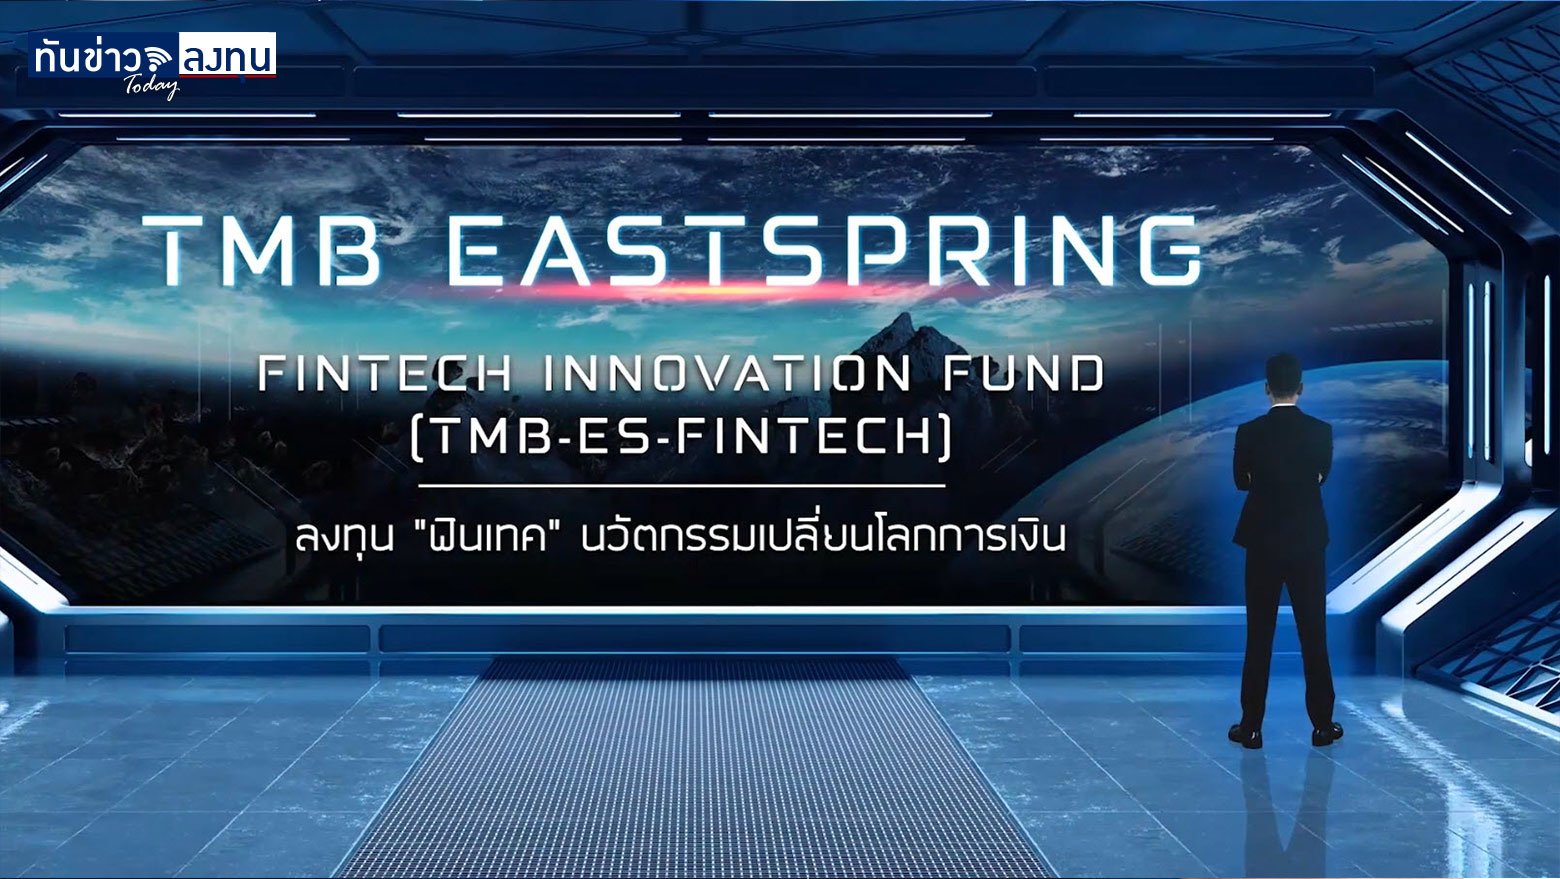 กองทุนเปิด ทีเอ็มบี อีสท์สปริง Fintech Innovation (TMB-ES-FINTECH)